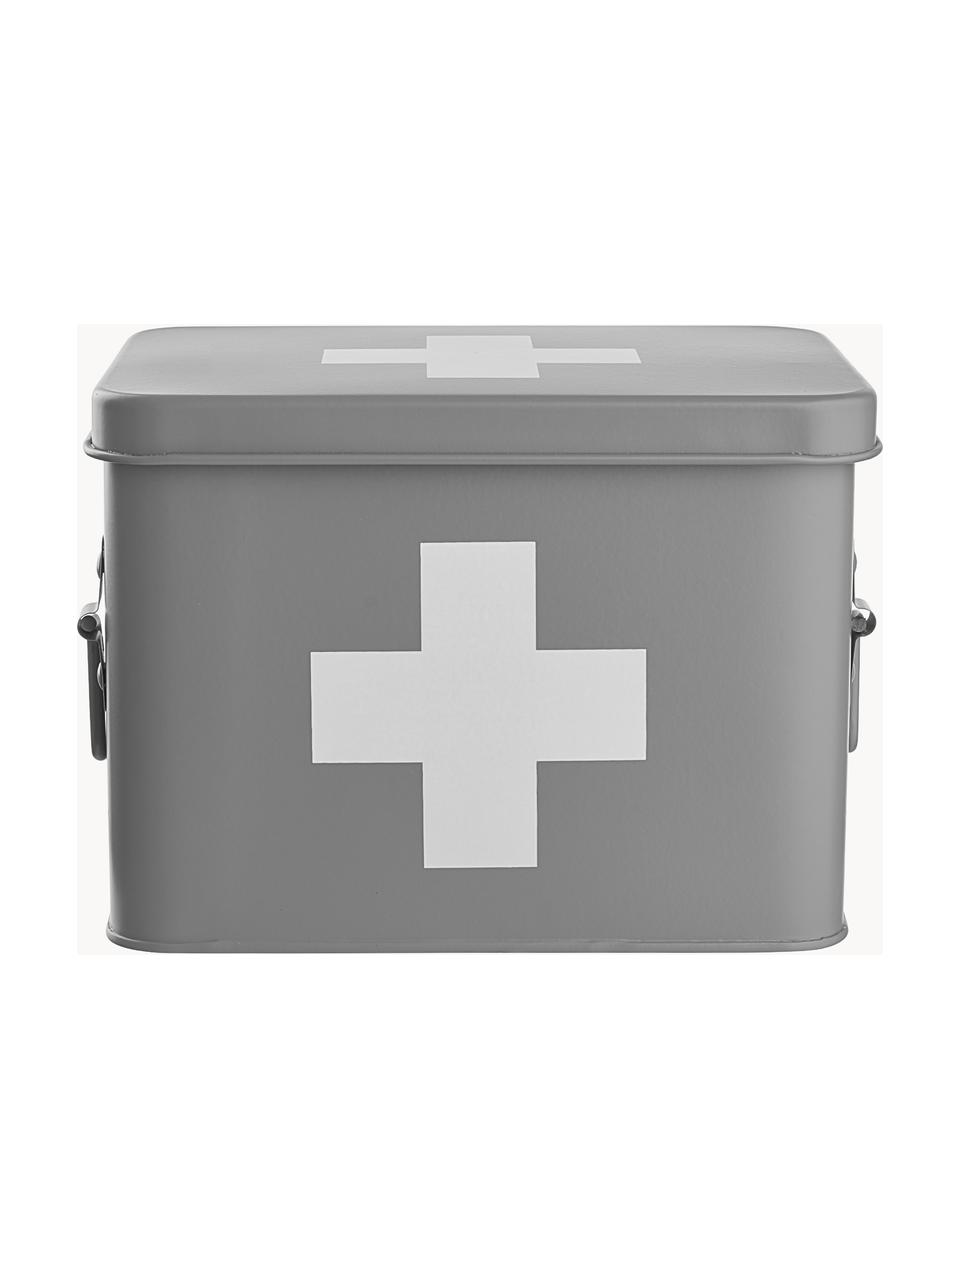 Aufbewahrungsbox Medic, Metall, beschichtet, Grau, Weiss, B 22 x H 16 cm